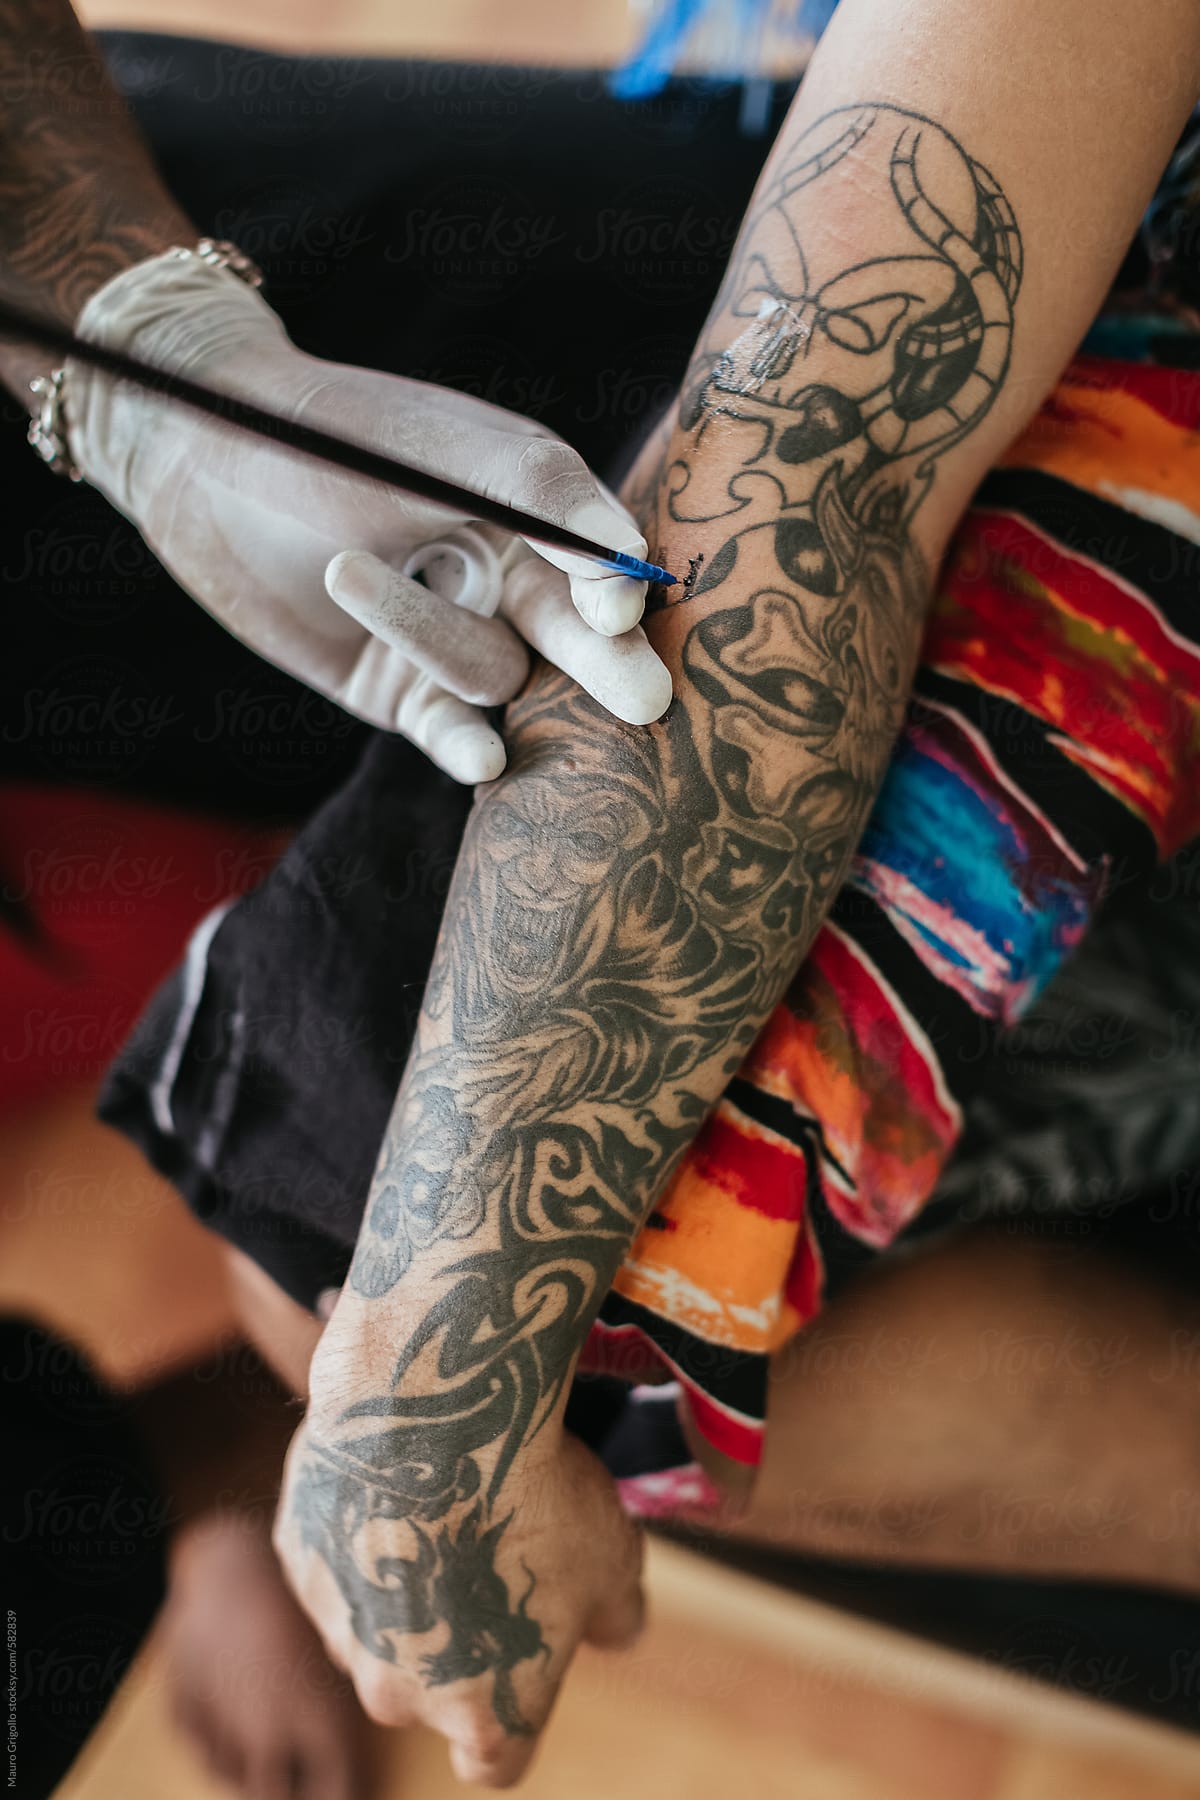 Thai tattoo artist working on a tattoo inside his studio